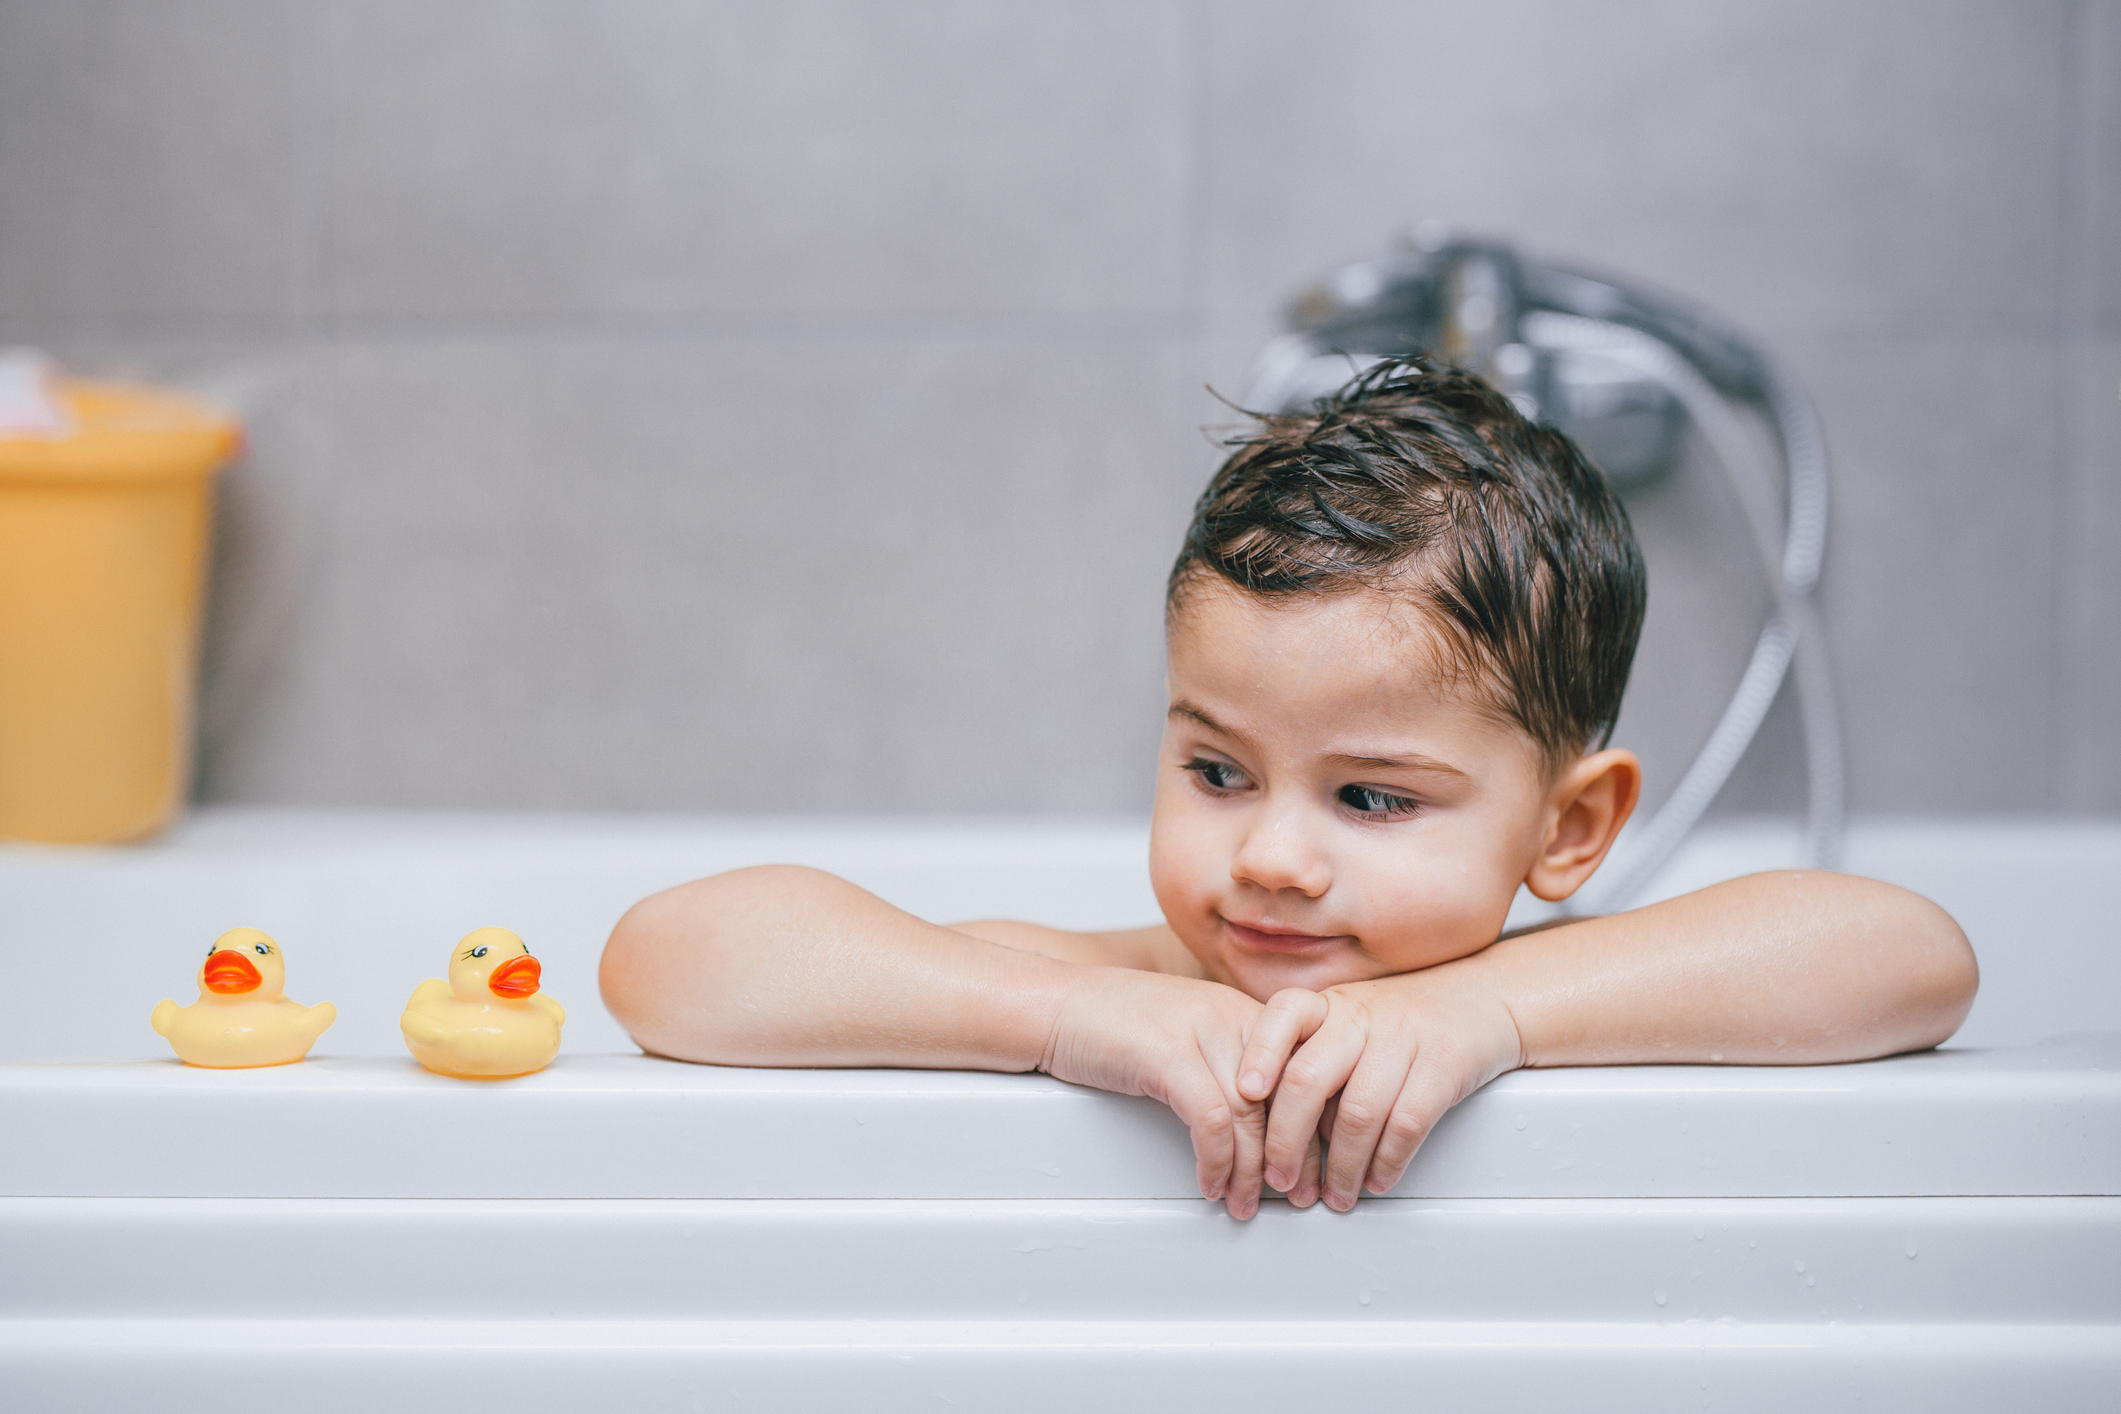 Είναι έτοιμο να κάνει μπάνιο μόνο του; 8 tips για να του μάθεις να το κάνει σωστά